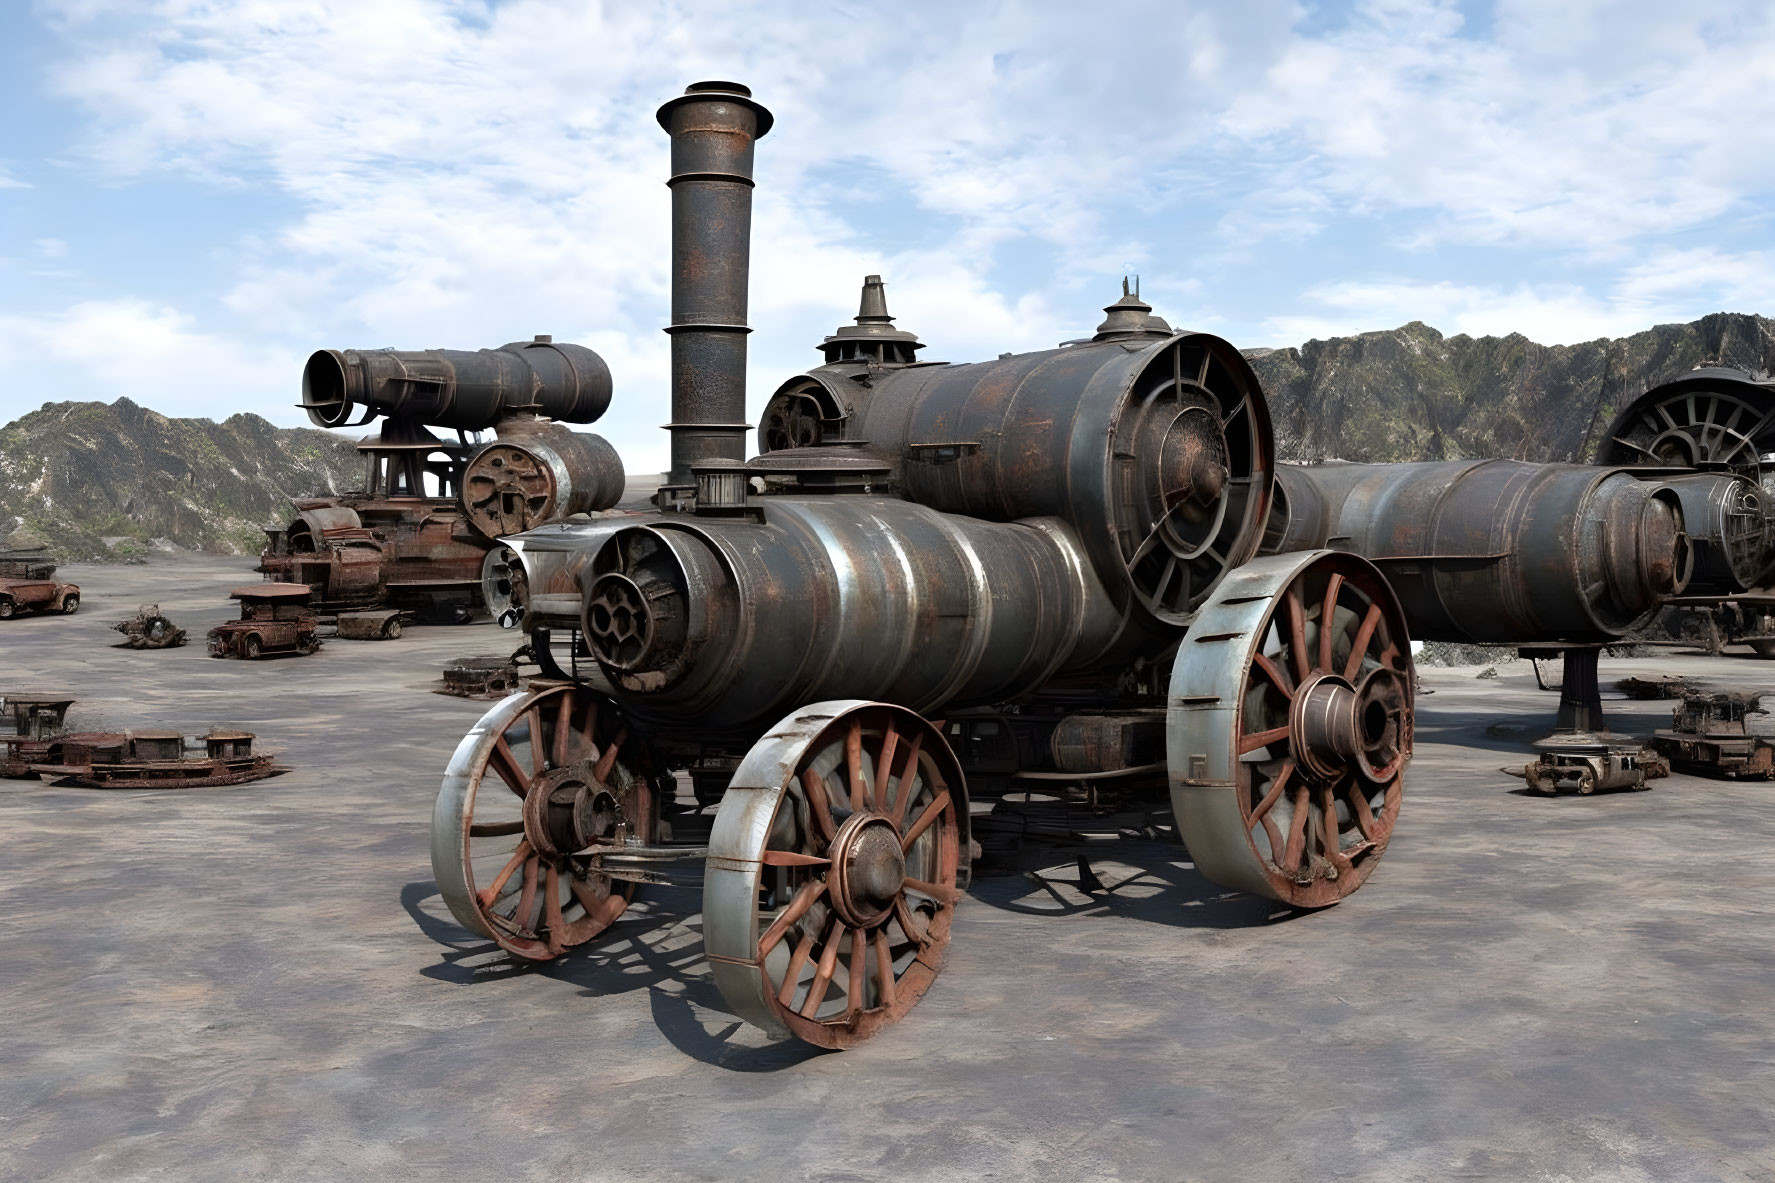 Vintage Steam Locomotives 3D Rendering in Desolate Landscape